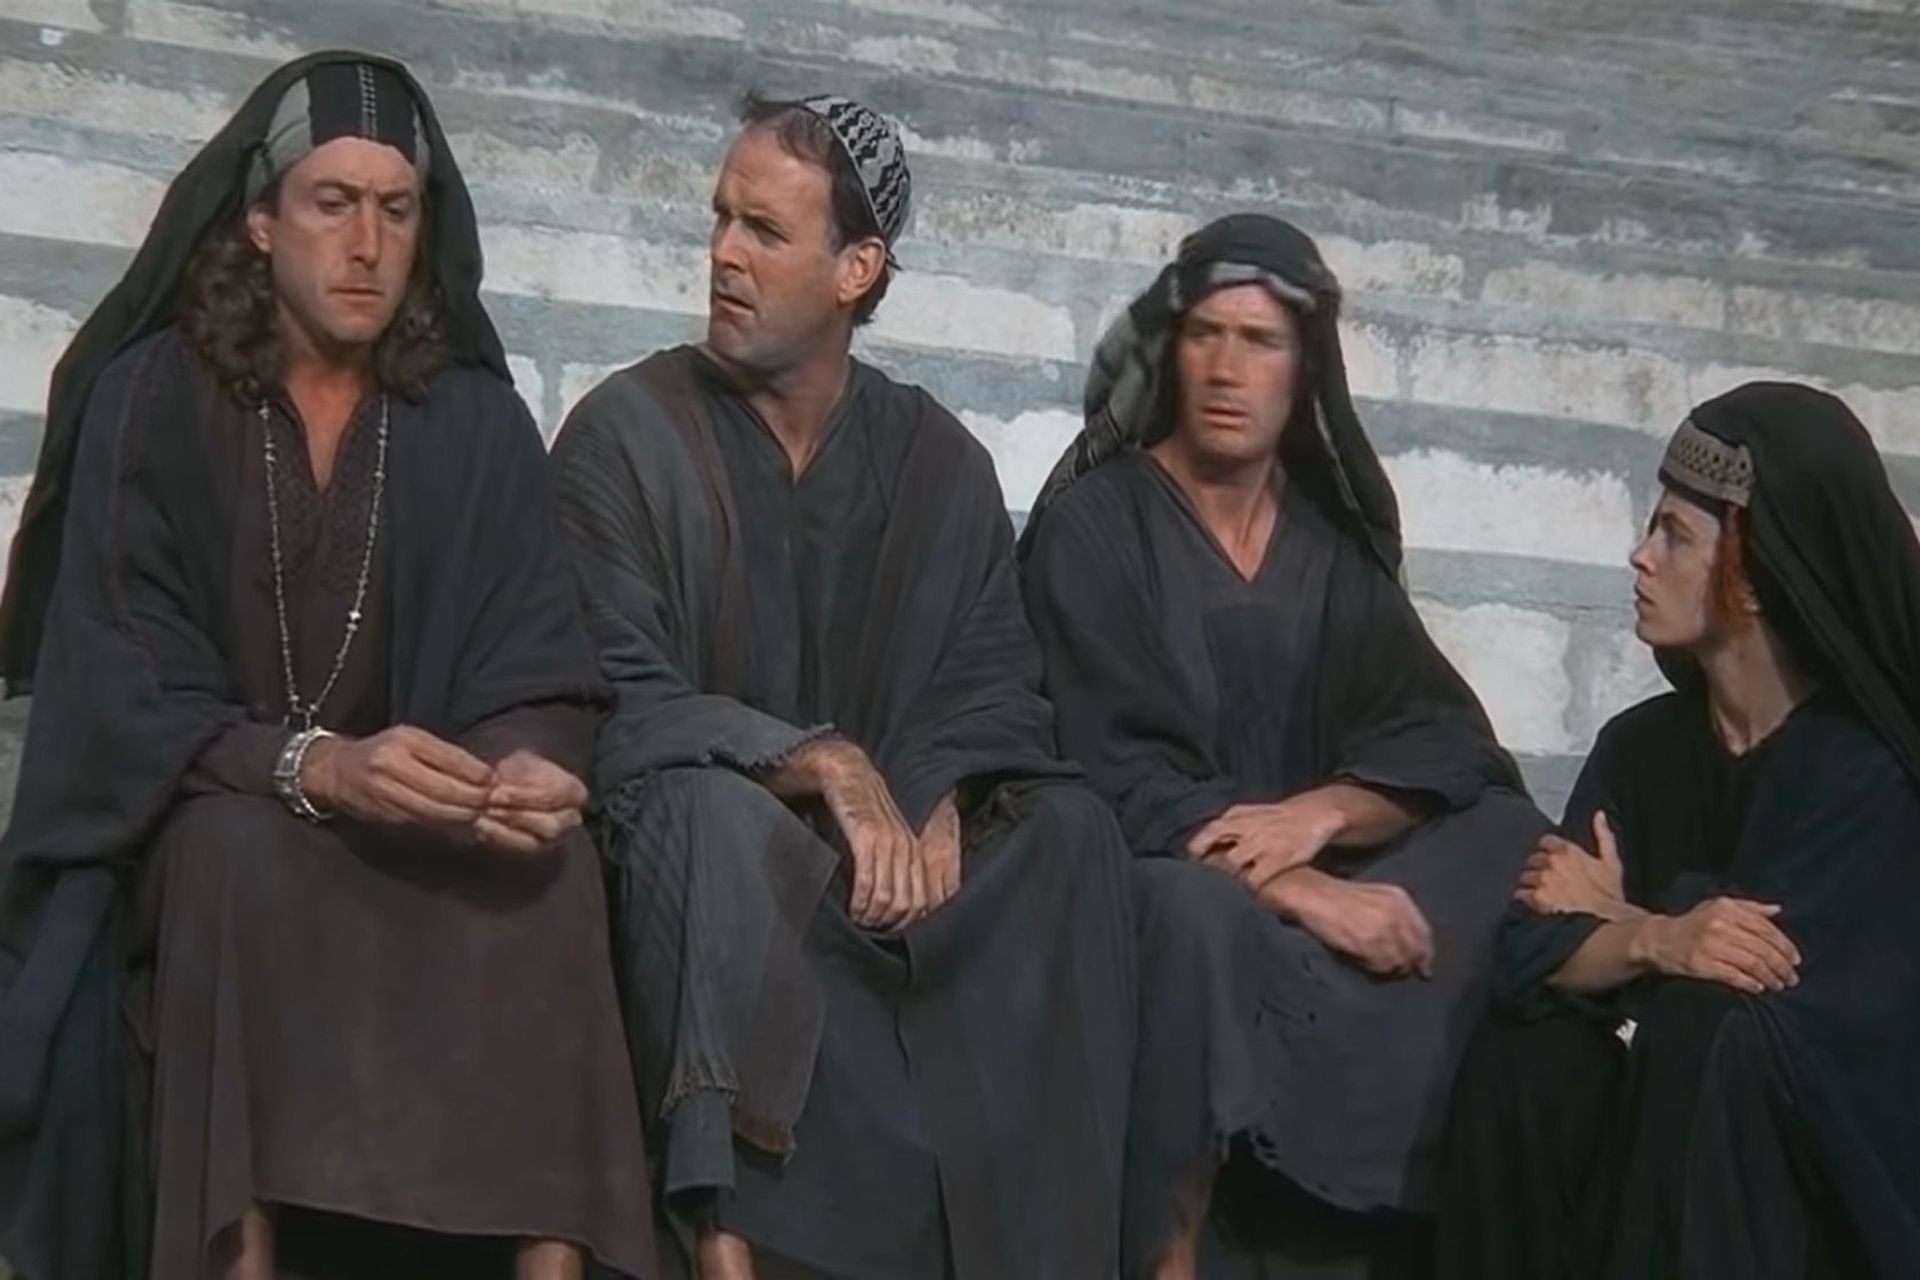 Un fotogramma della scena "Loretta" del film "Life of Brian" del gruppo umoristico "Monty Python'"